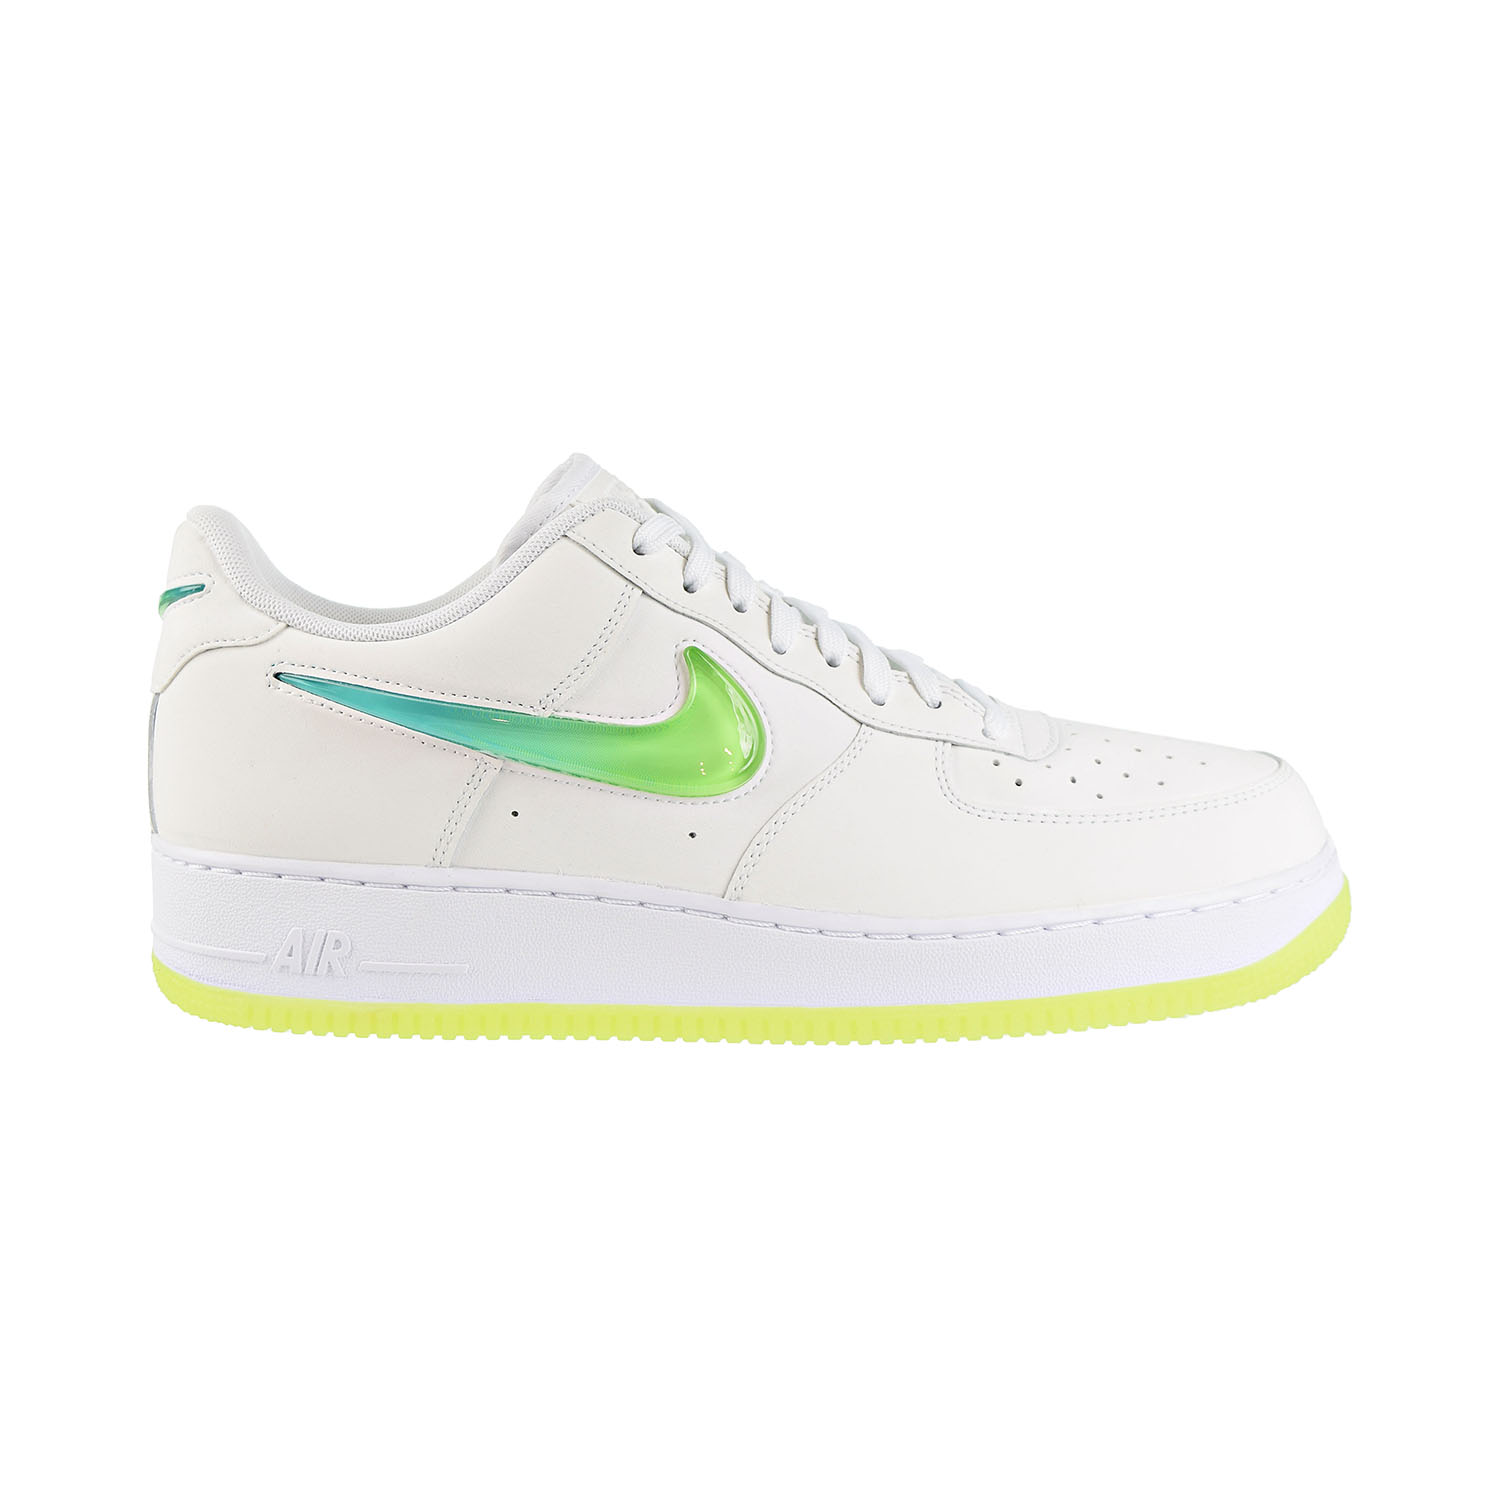 Nike air force tennis shoes Air Force 1 '07 Premium 2 Mens Shoes White/Volt/Hyper Jade